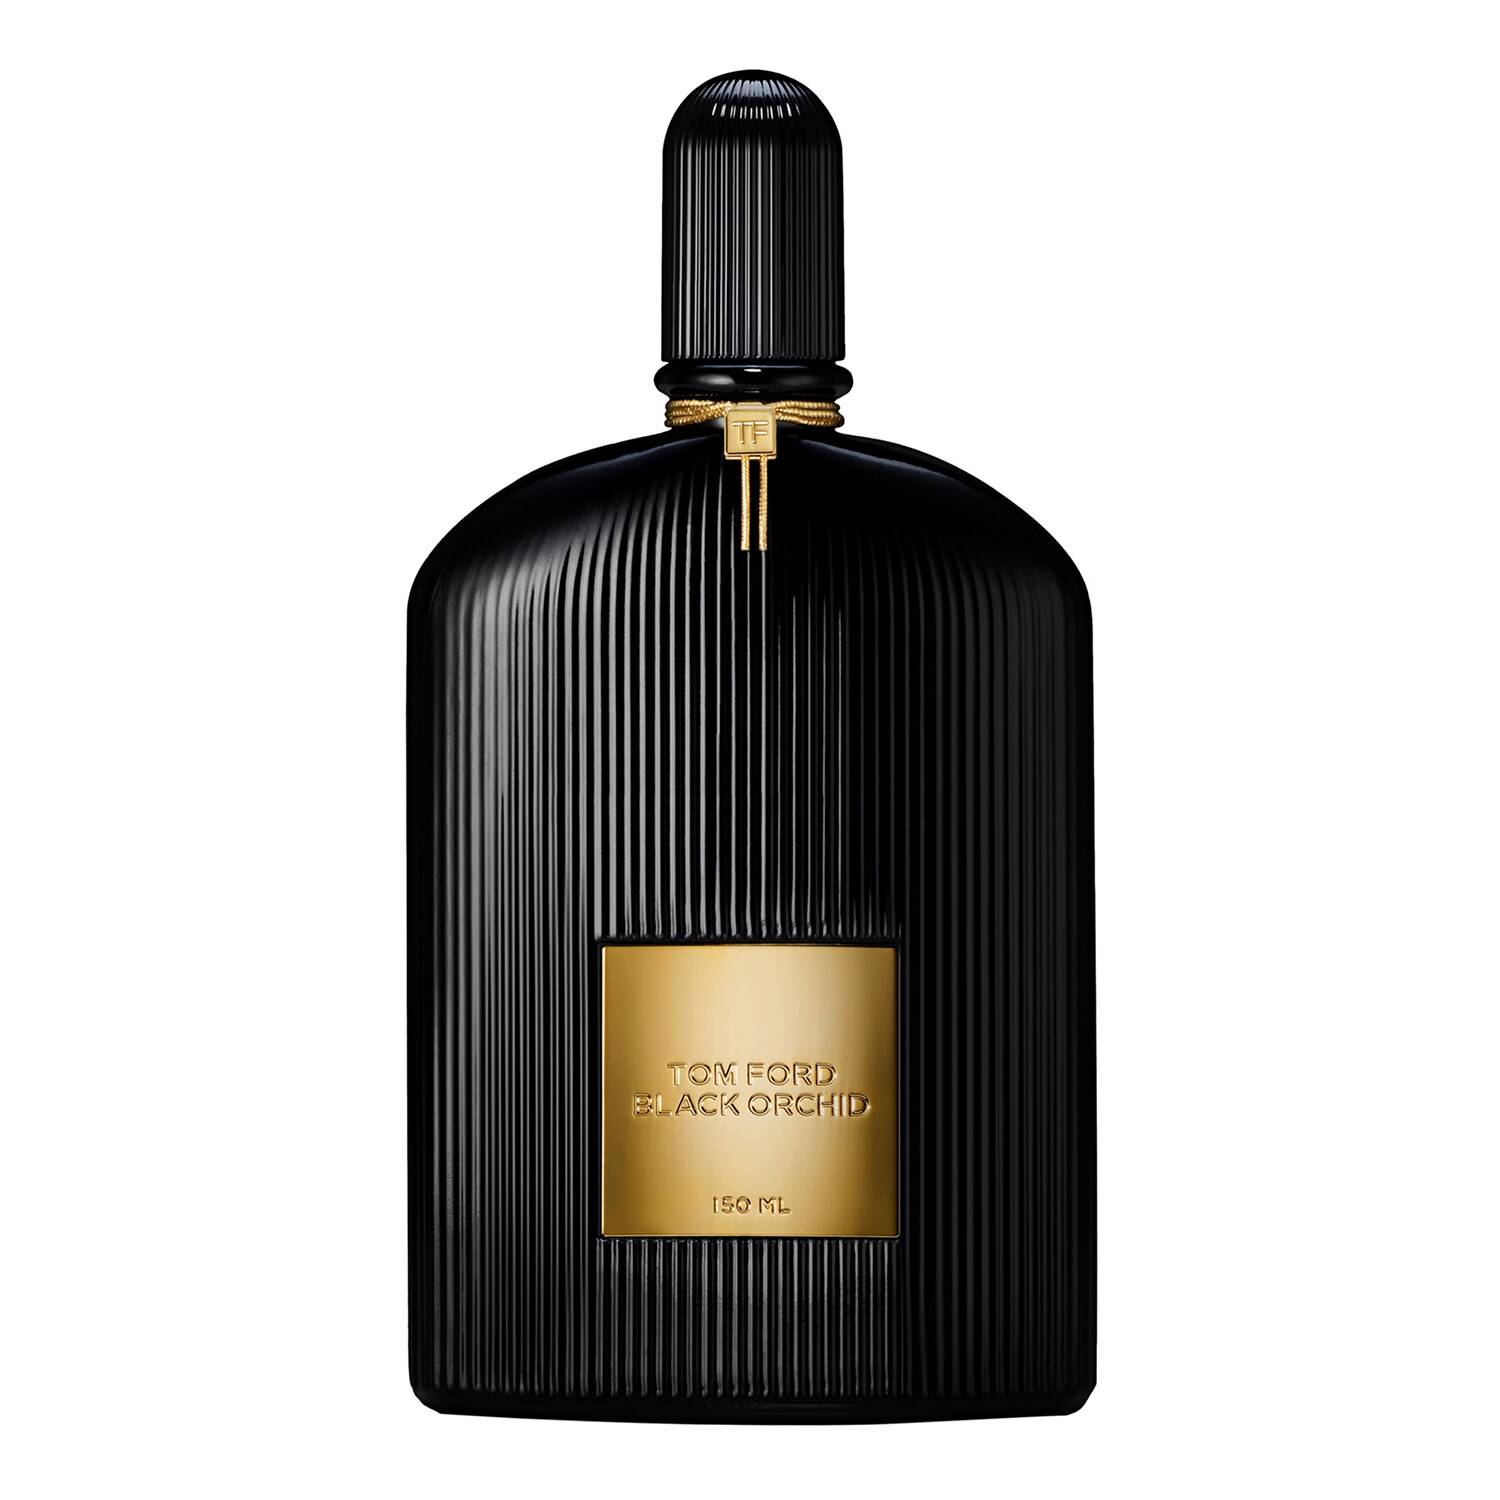 Tom Ford Black Orchid Eau De Parfum 150Ml